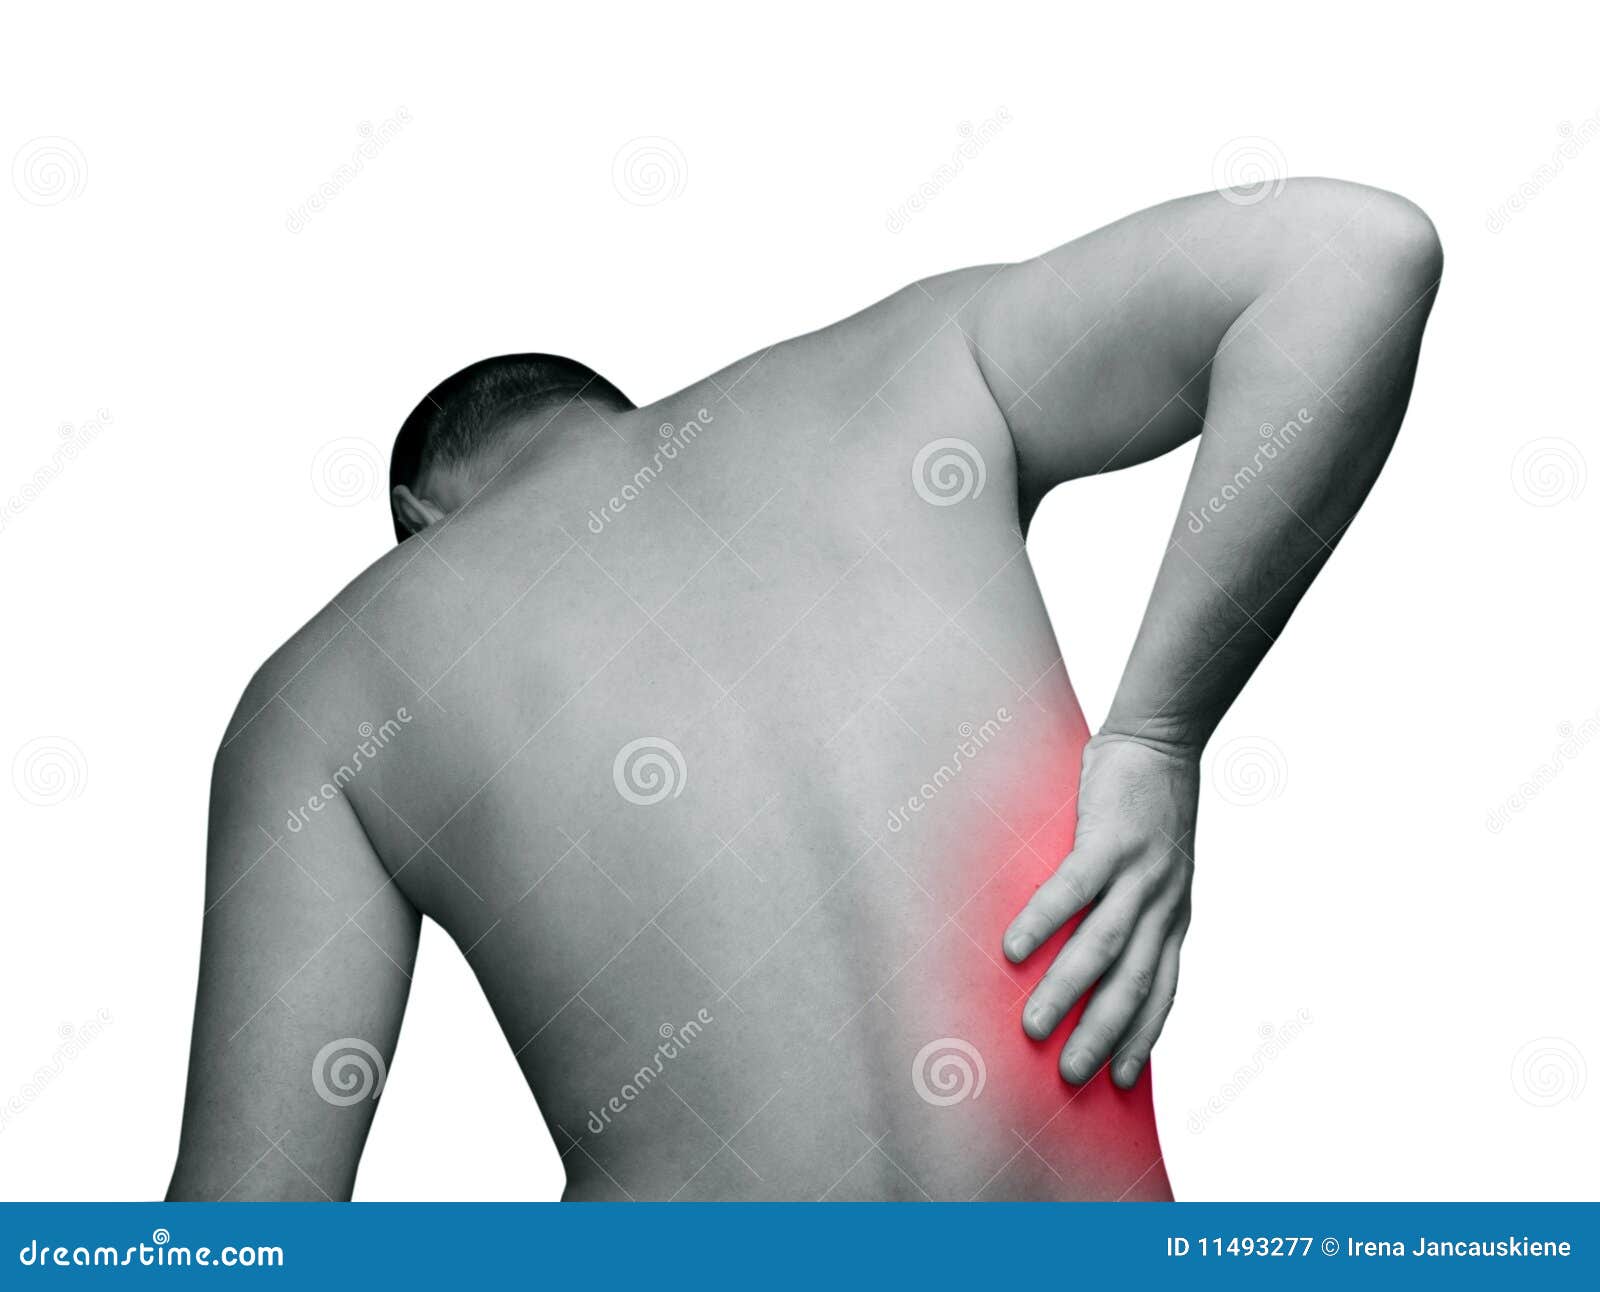 Боль в левом ребре и спине. Боль в спине. Боль в спине справа. Болит спина справа под ребрами. Боль в спине справа под ребрами.